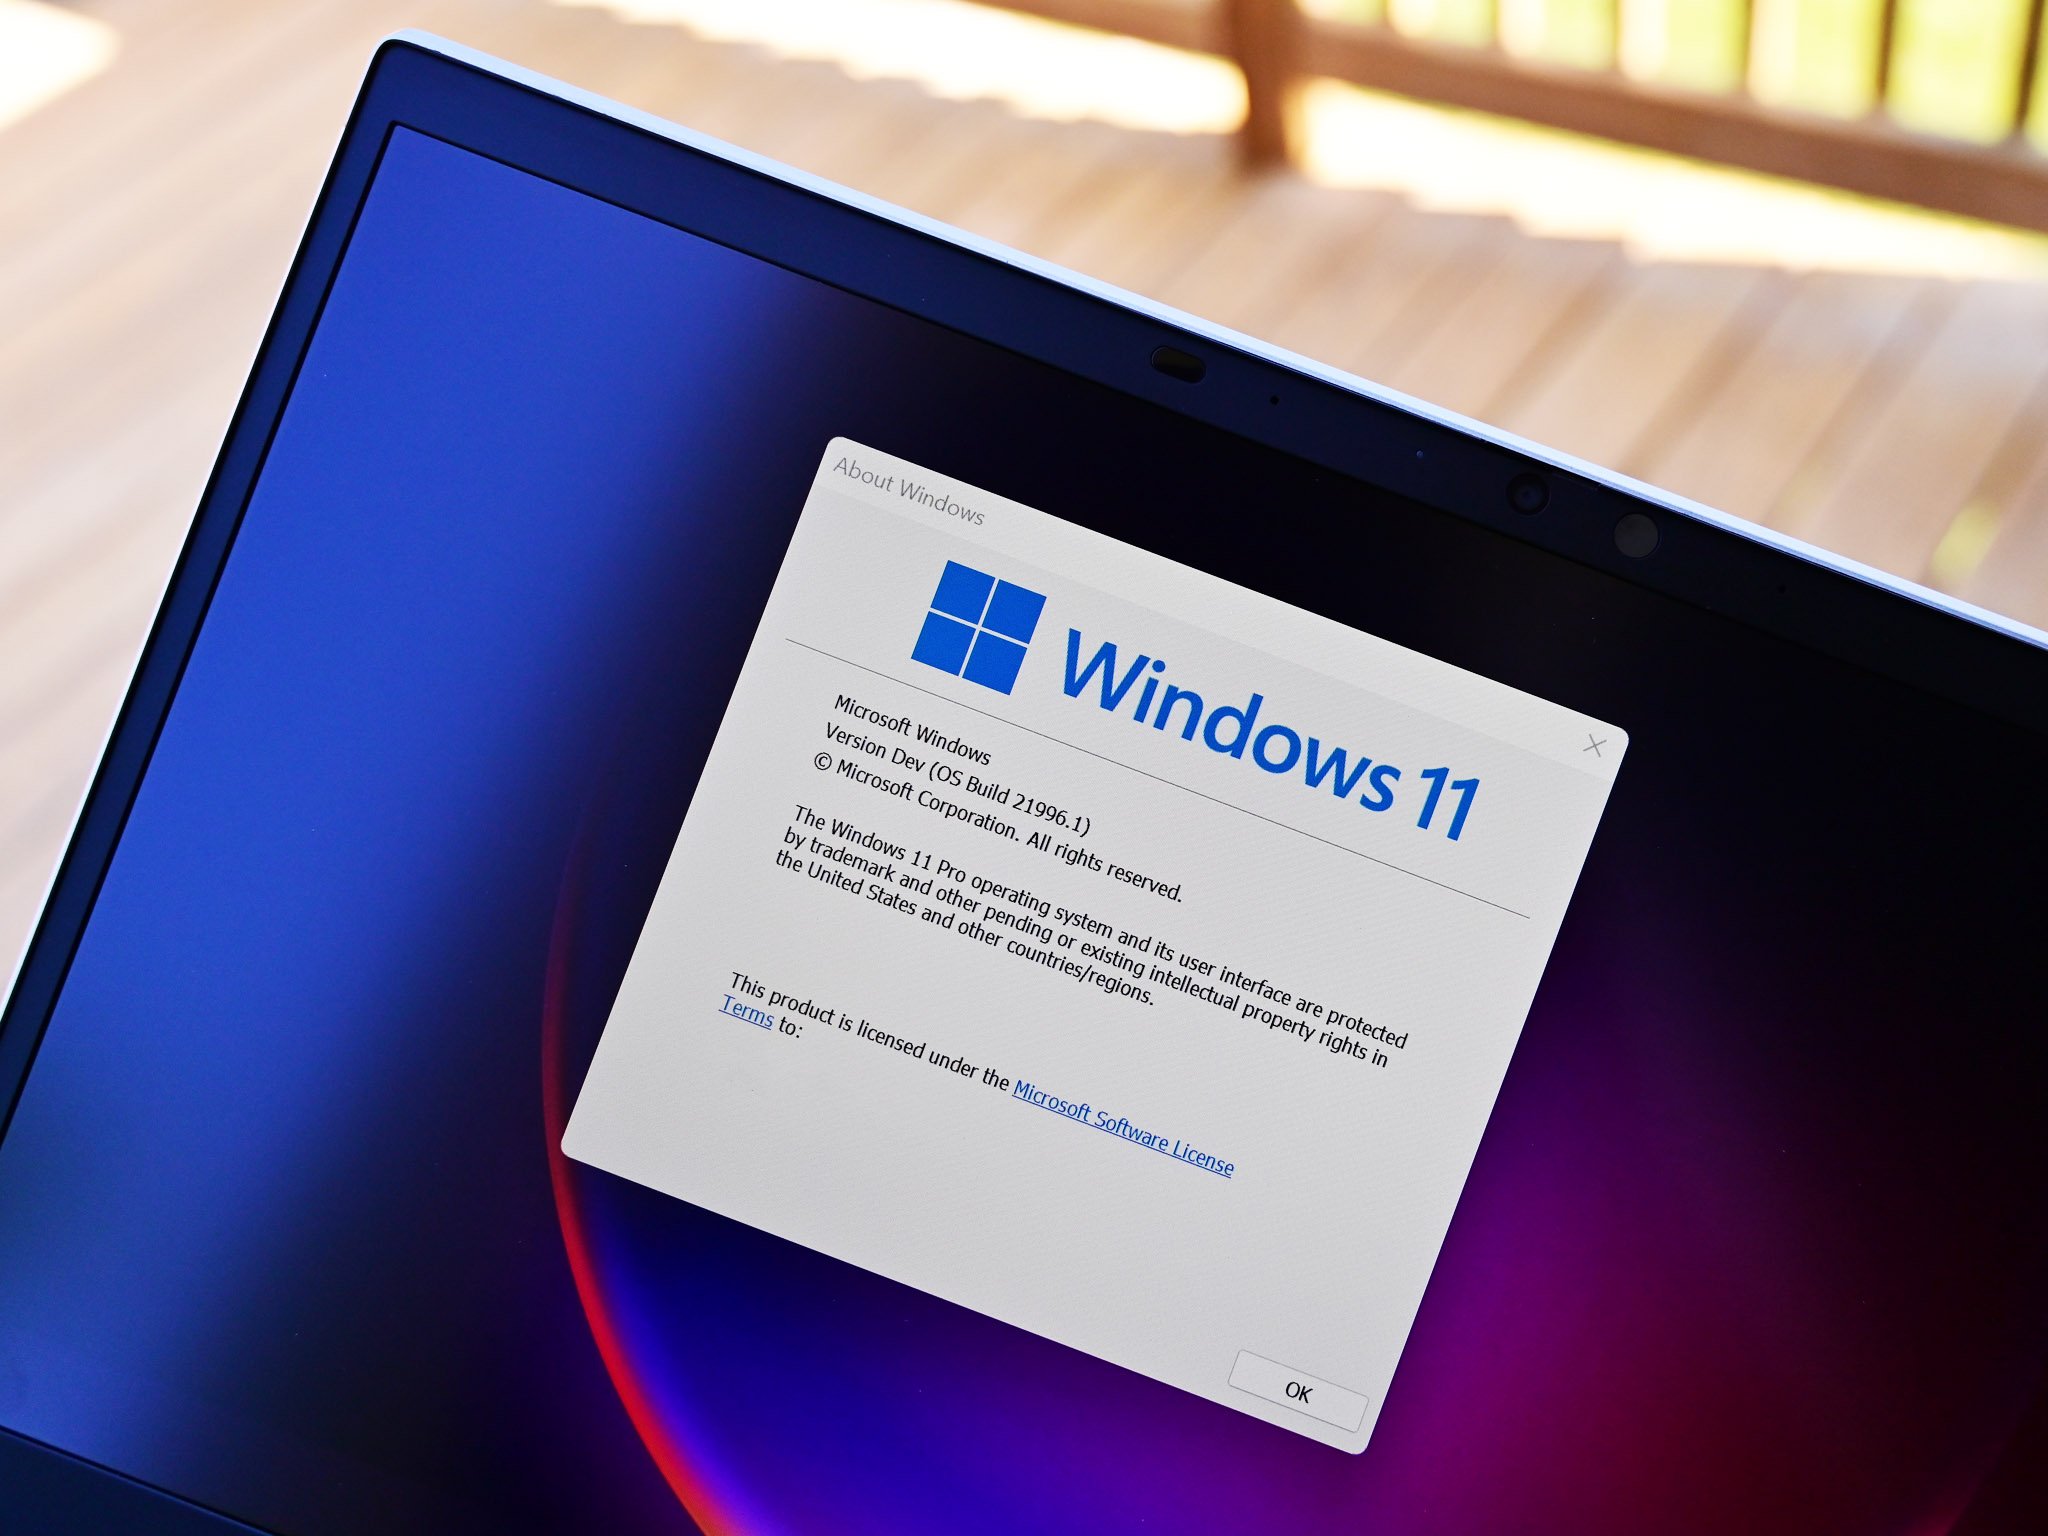 3 things we love in Windows 11 (and 3 things we hate)